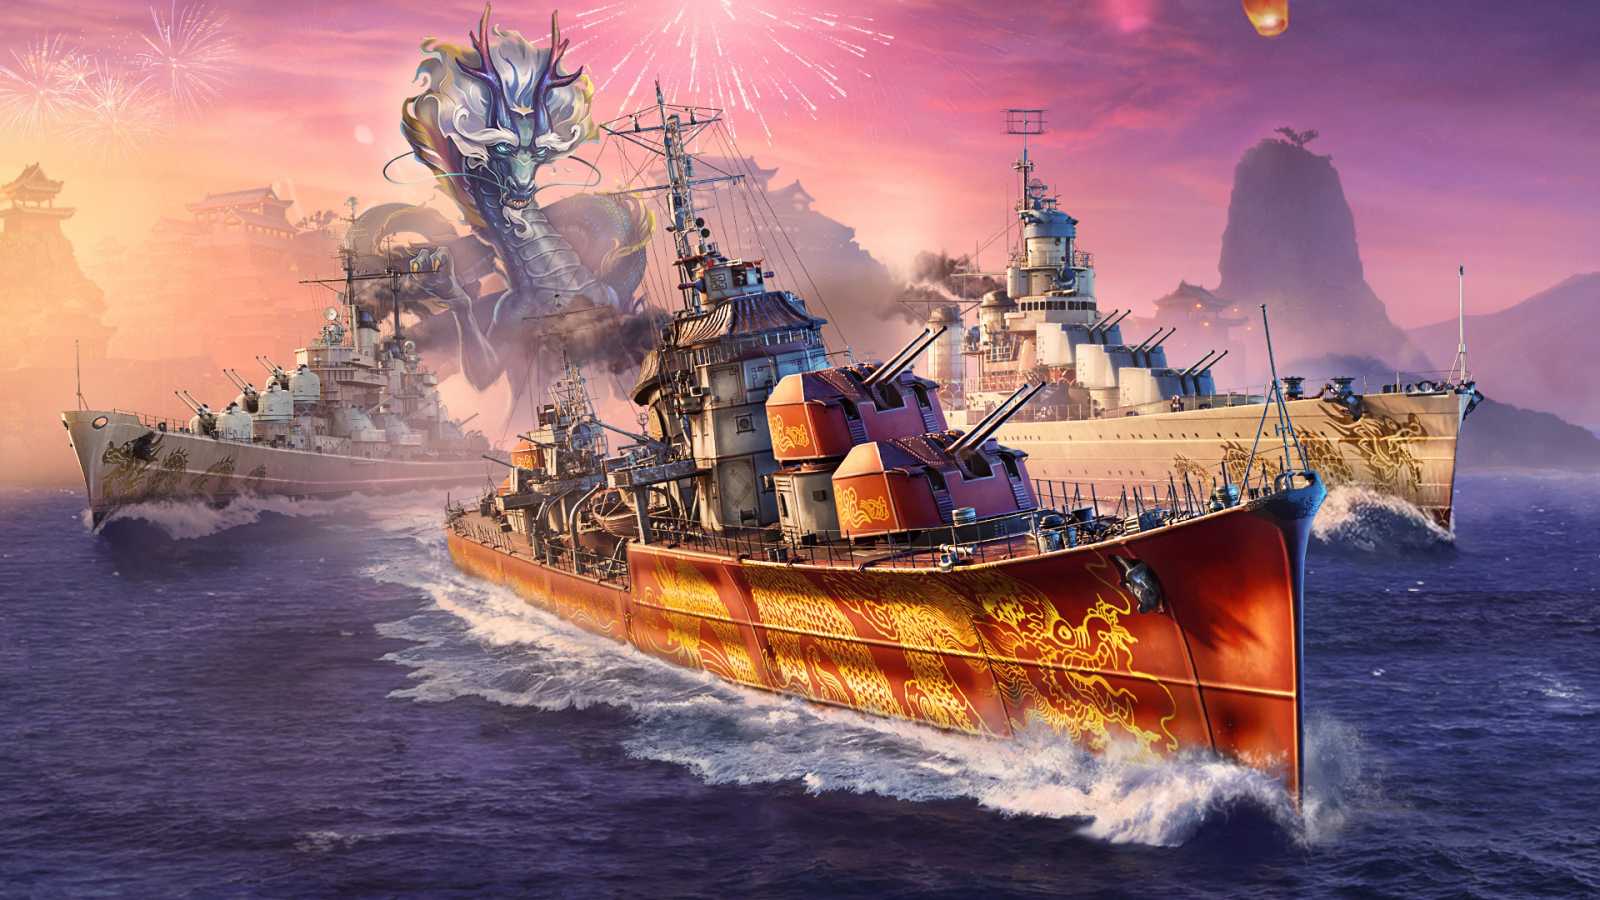 World of Warships: Legends slaví nový lunární rok, pokračuje partnerství s Azur Lane